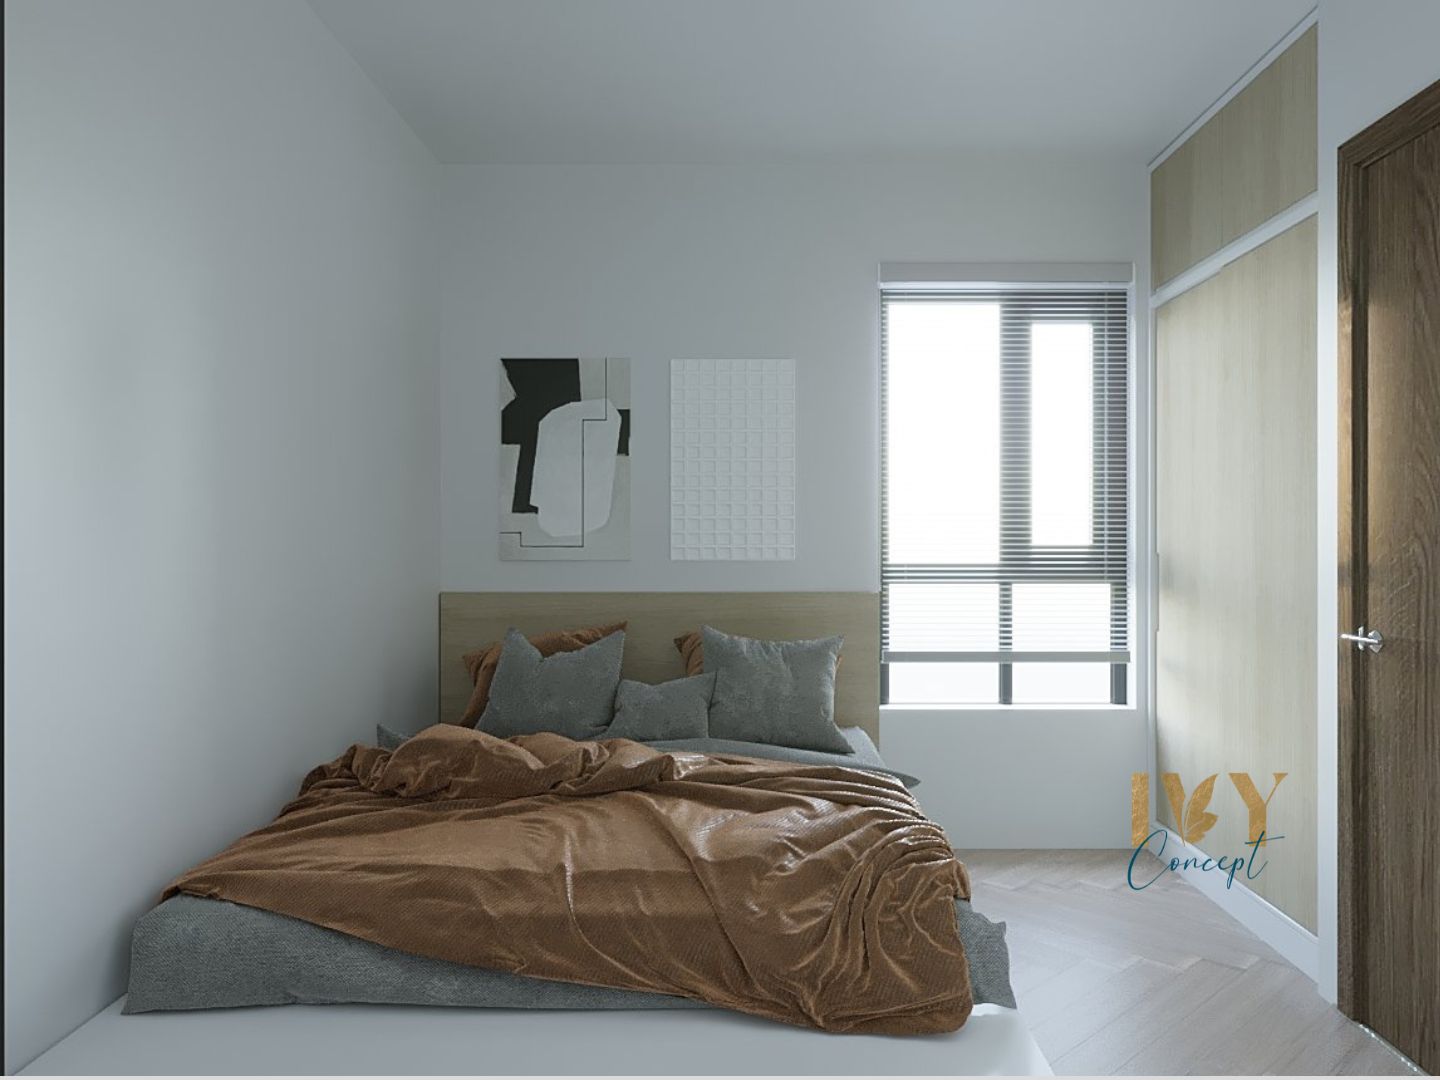 Phòng ngủ, phong cách Hiện đại Modern, thiết kế concept nội thất, căn hộ River Panorama